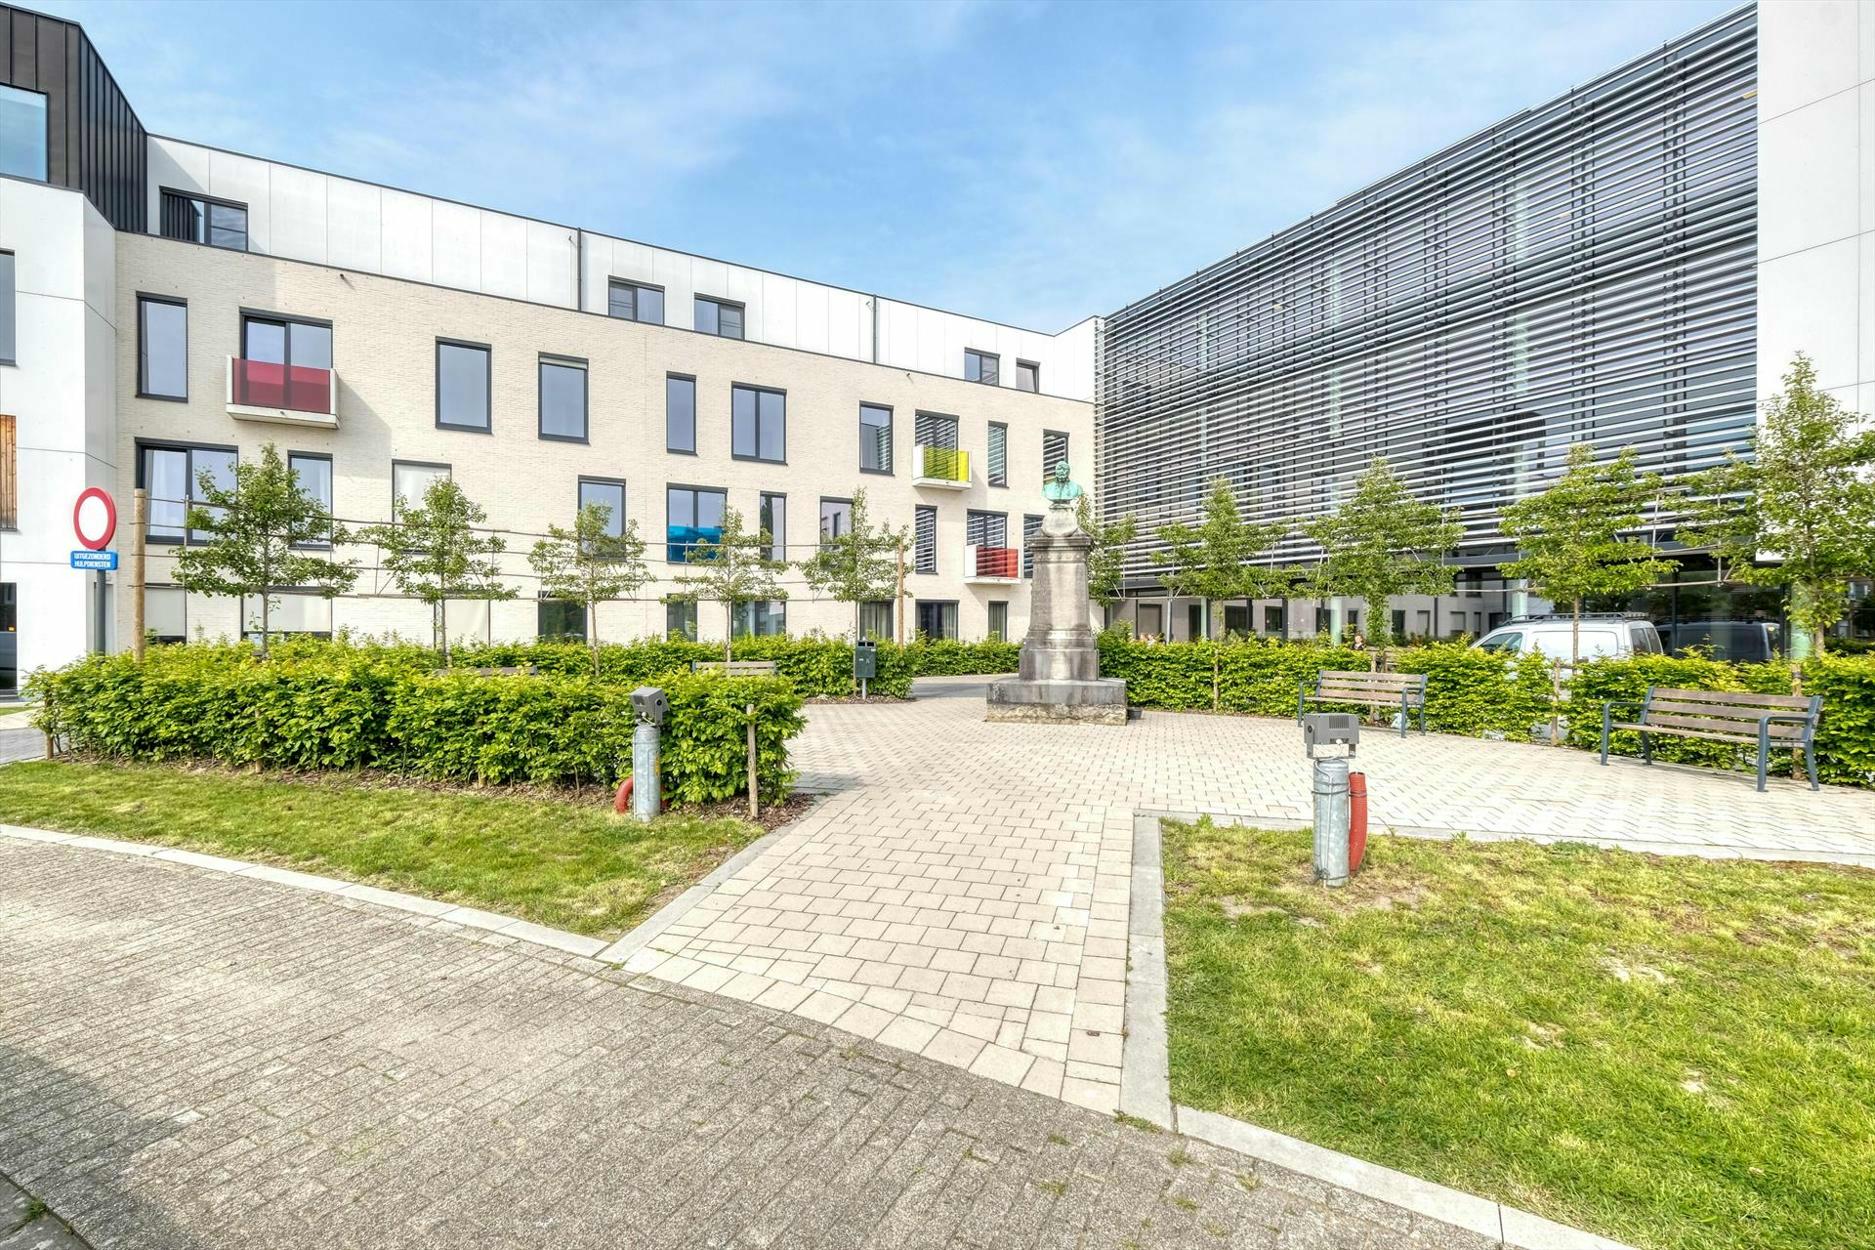 Gunstig gelegen assistentiewoning met een bewoonbare oppervlakte van 45 m² te Tienen